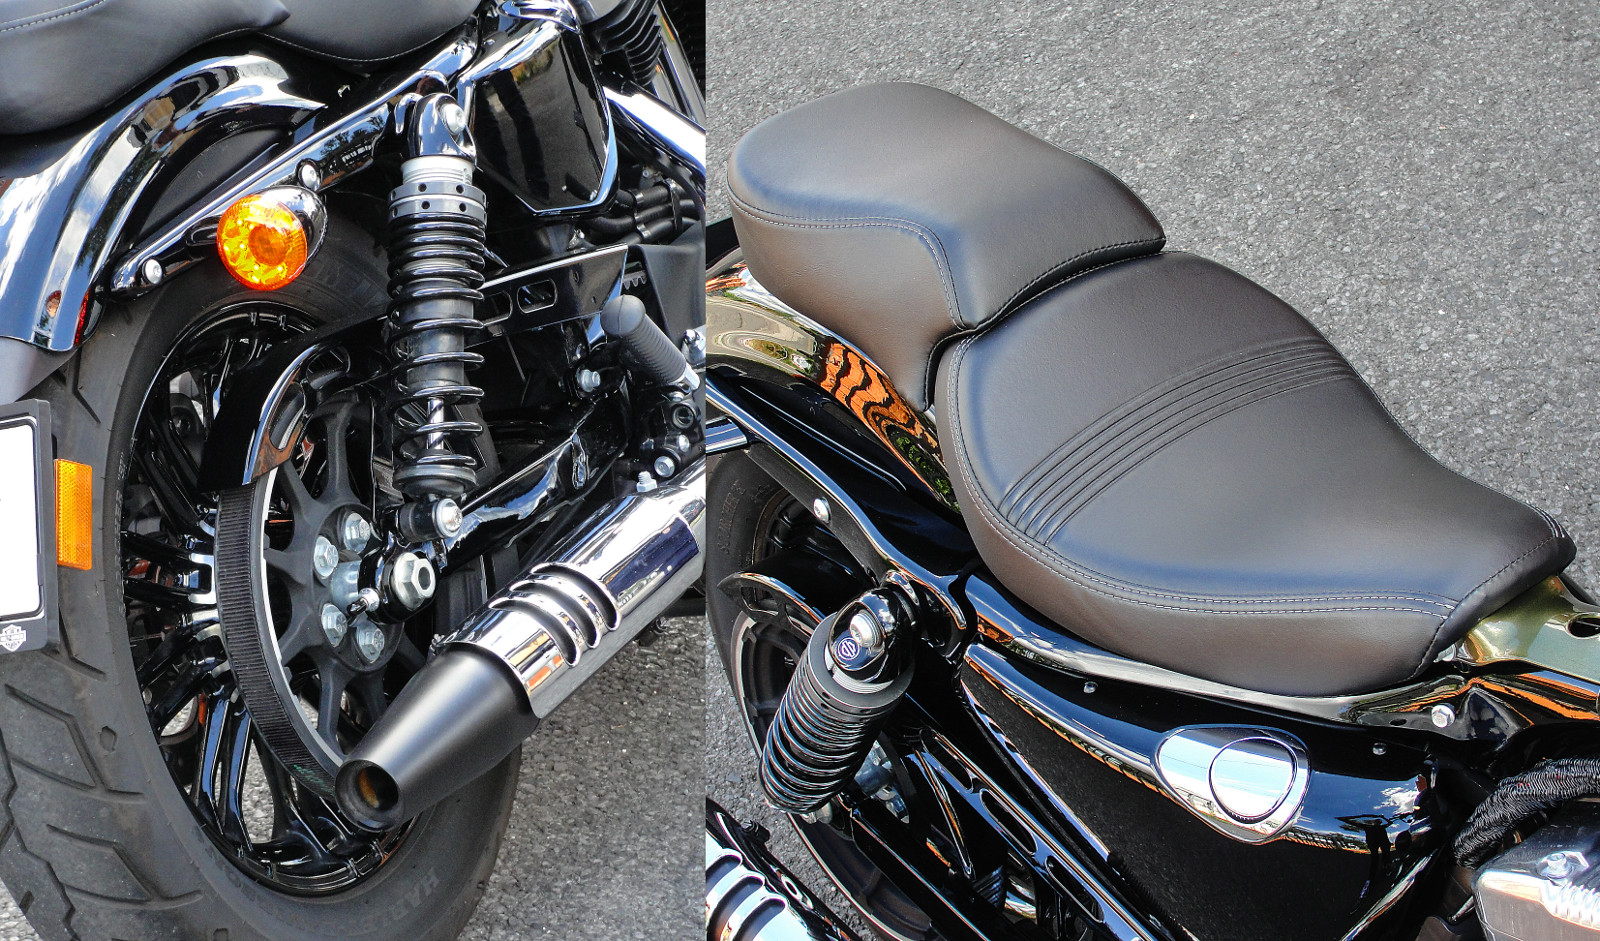 Tipikus Harley: szíjhajtás és szivarvégre emlékeztető kipufogó. Kétüléses kivitelben is elérhető a Forty-Eight, de a hátsó ülés egészen apró